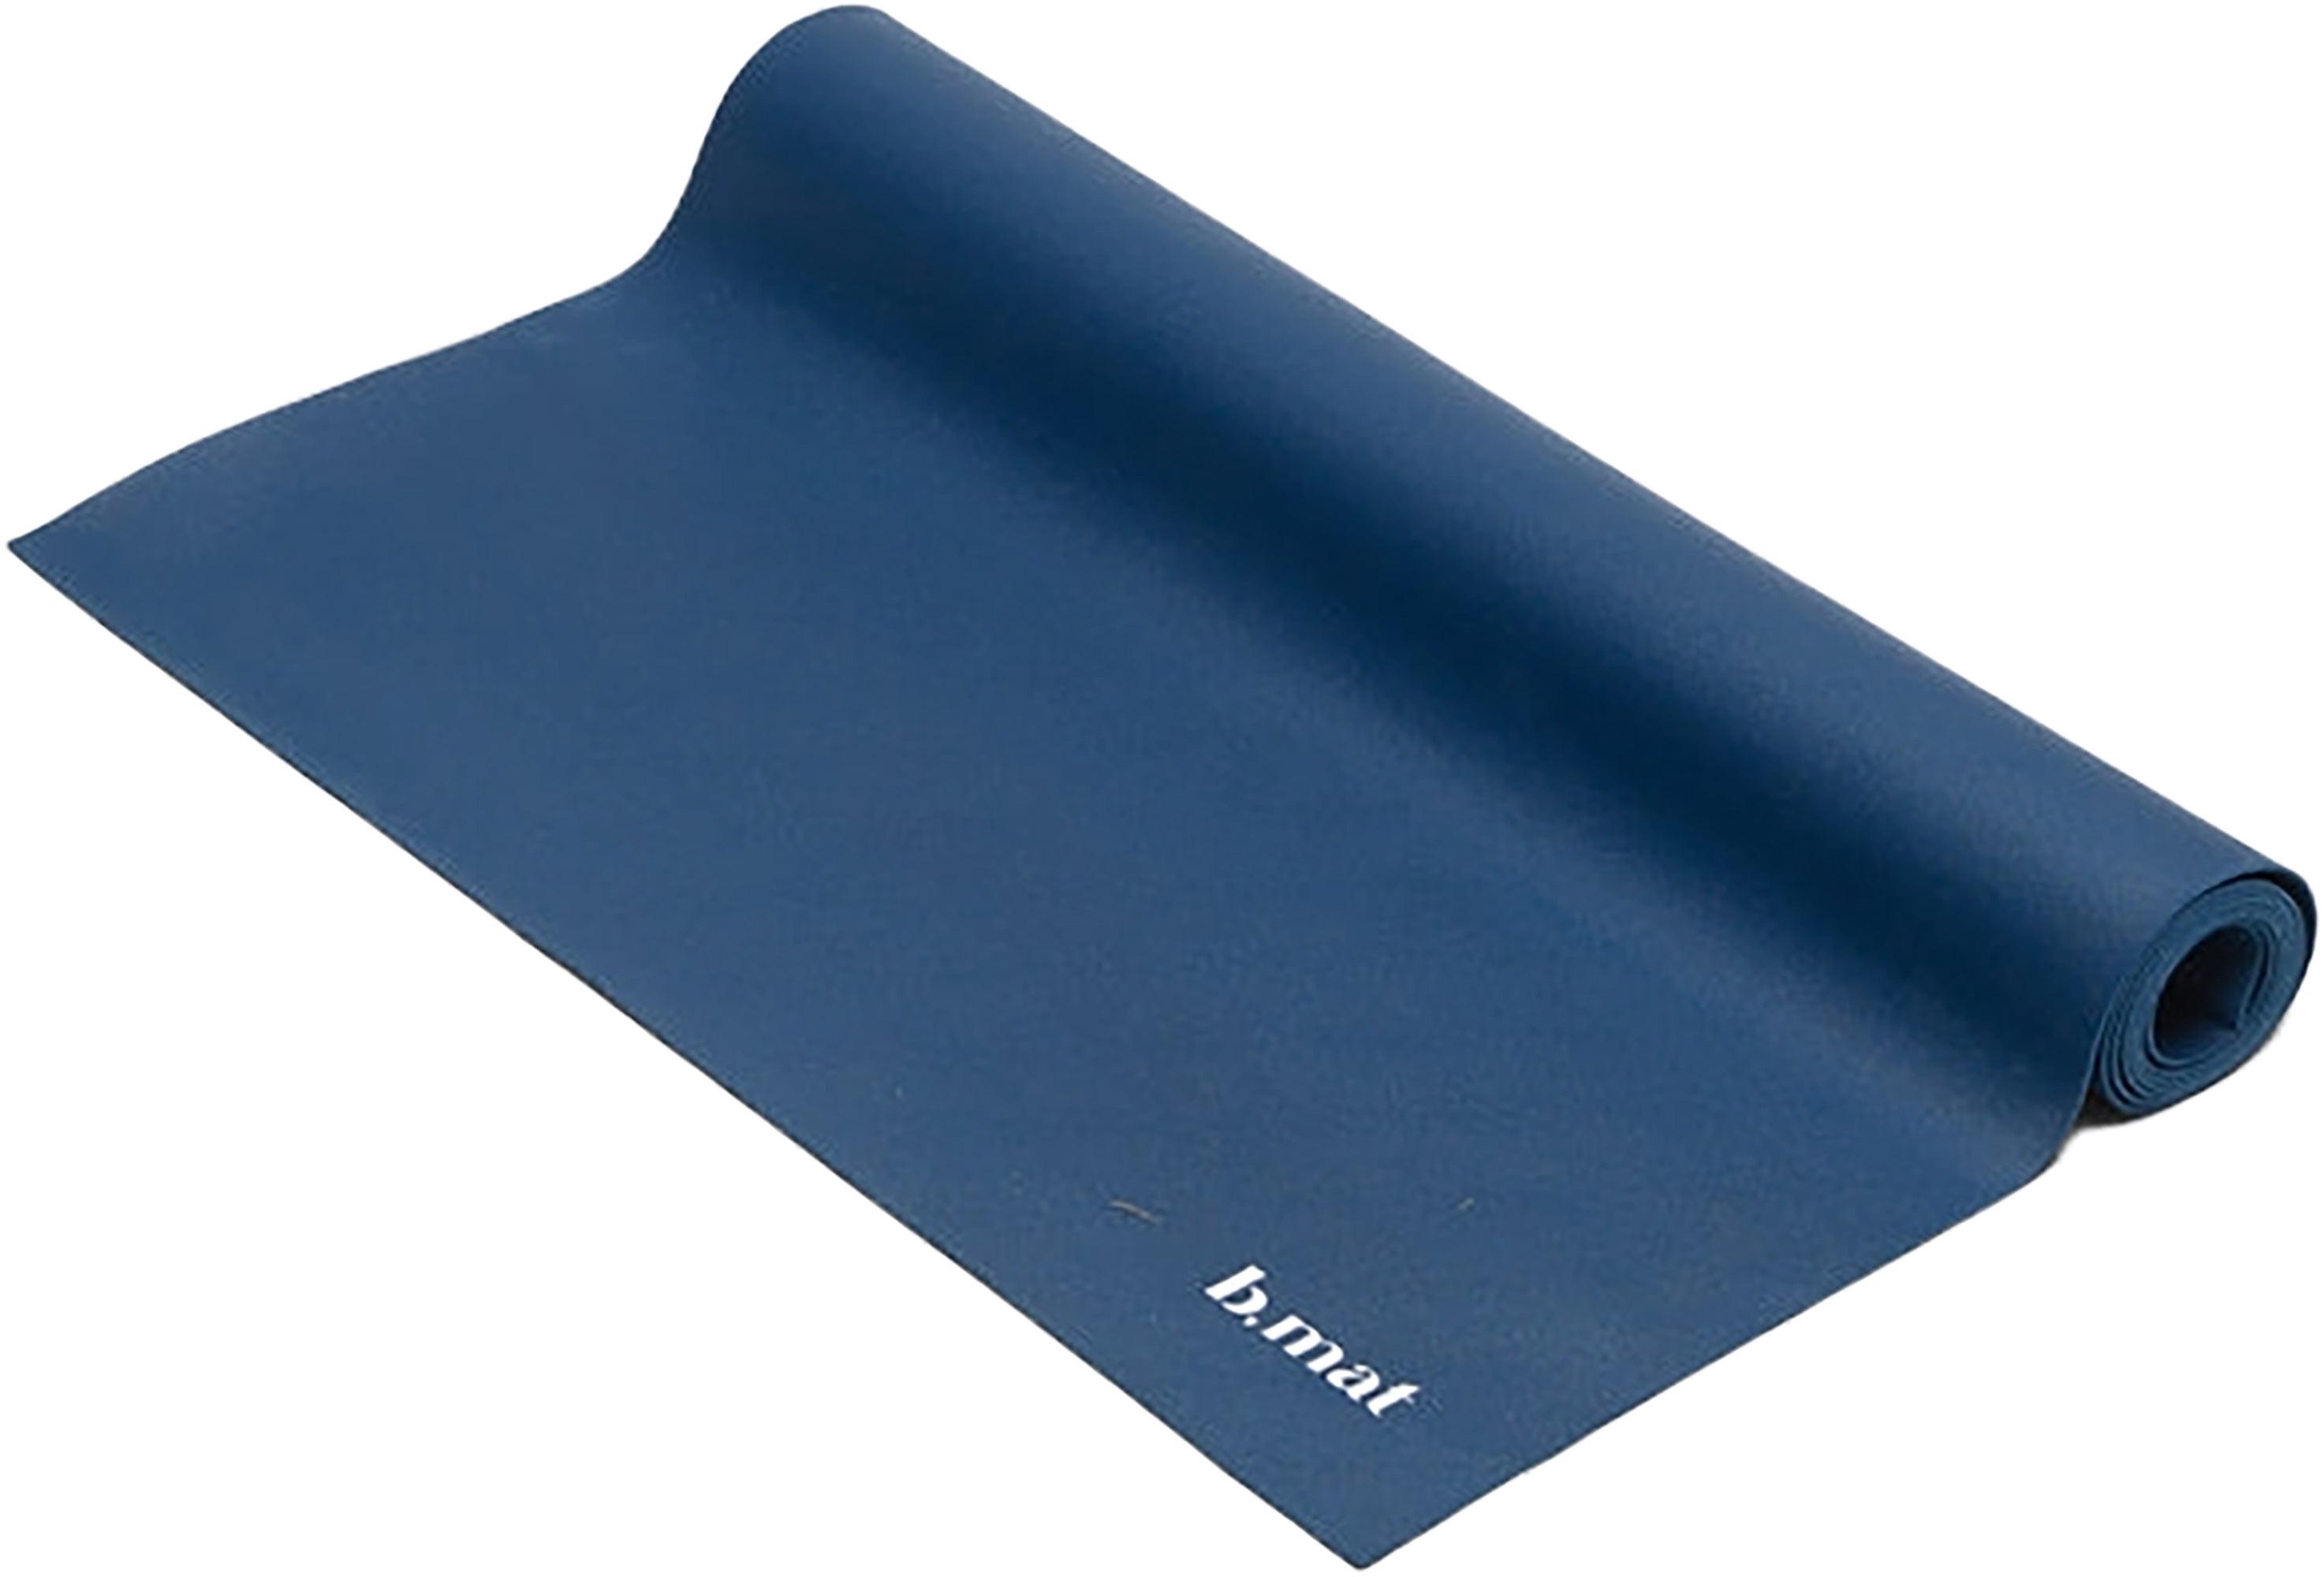 B Yoga B MAT Travel Yoga Mat, 2mm, Rubber, Lightweight